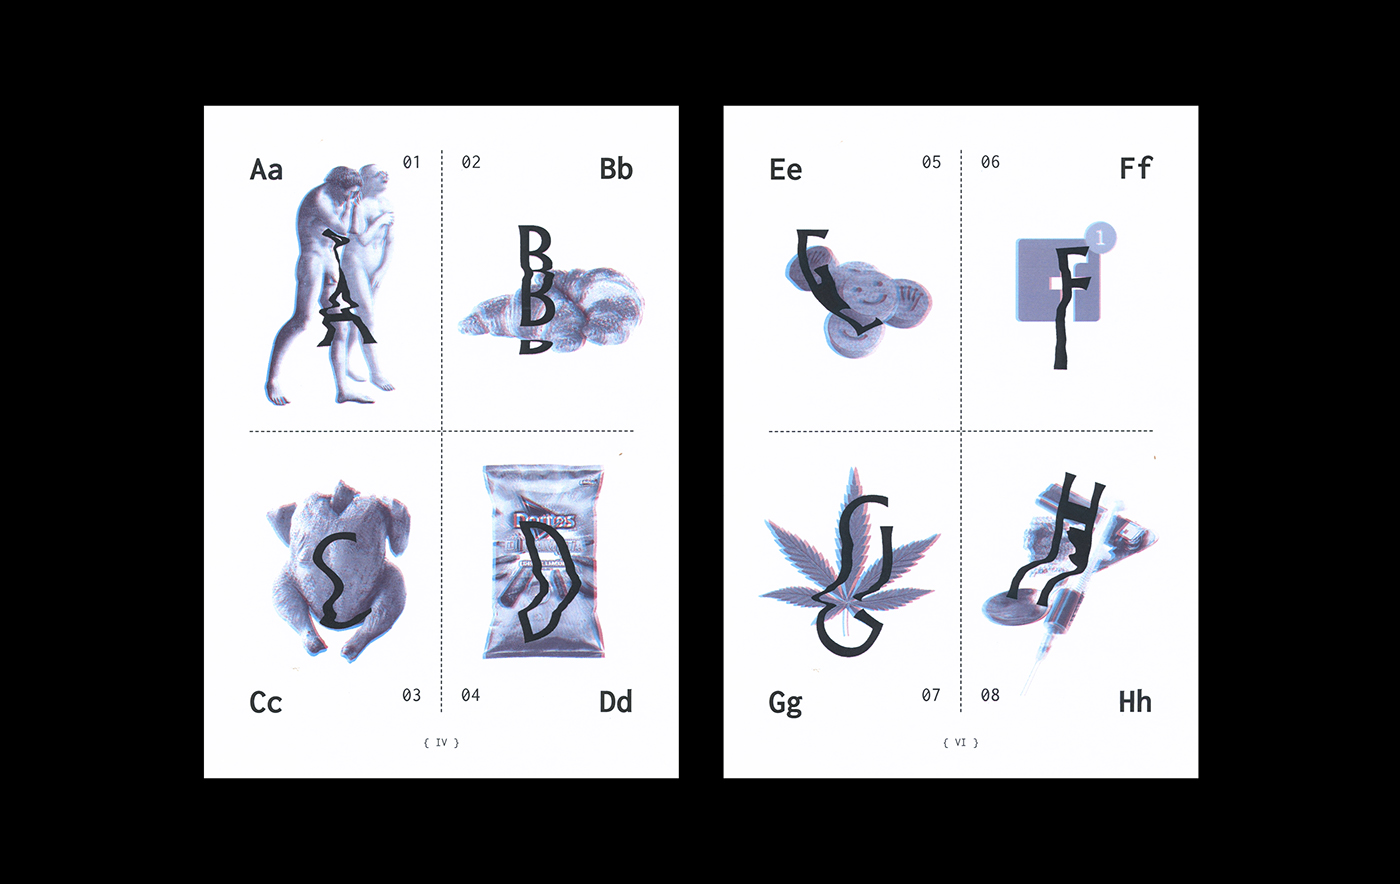 fanzine magazine experimental editorial Glitch scanner distortion 3D typography   alphabet